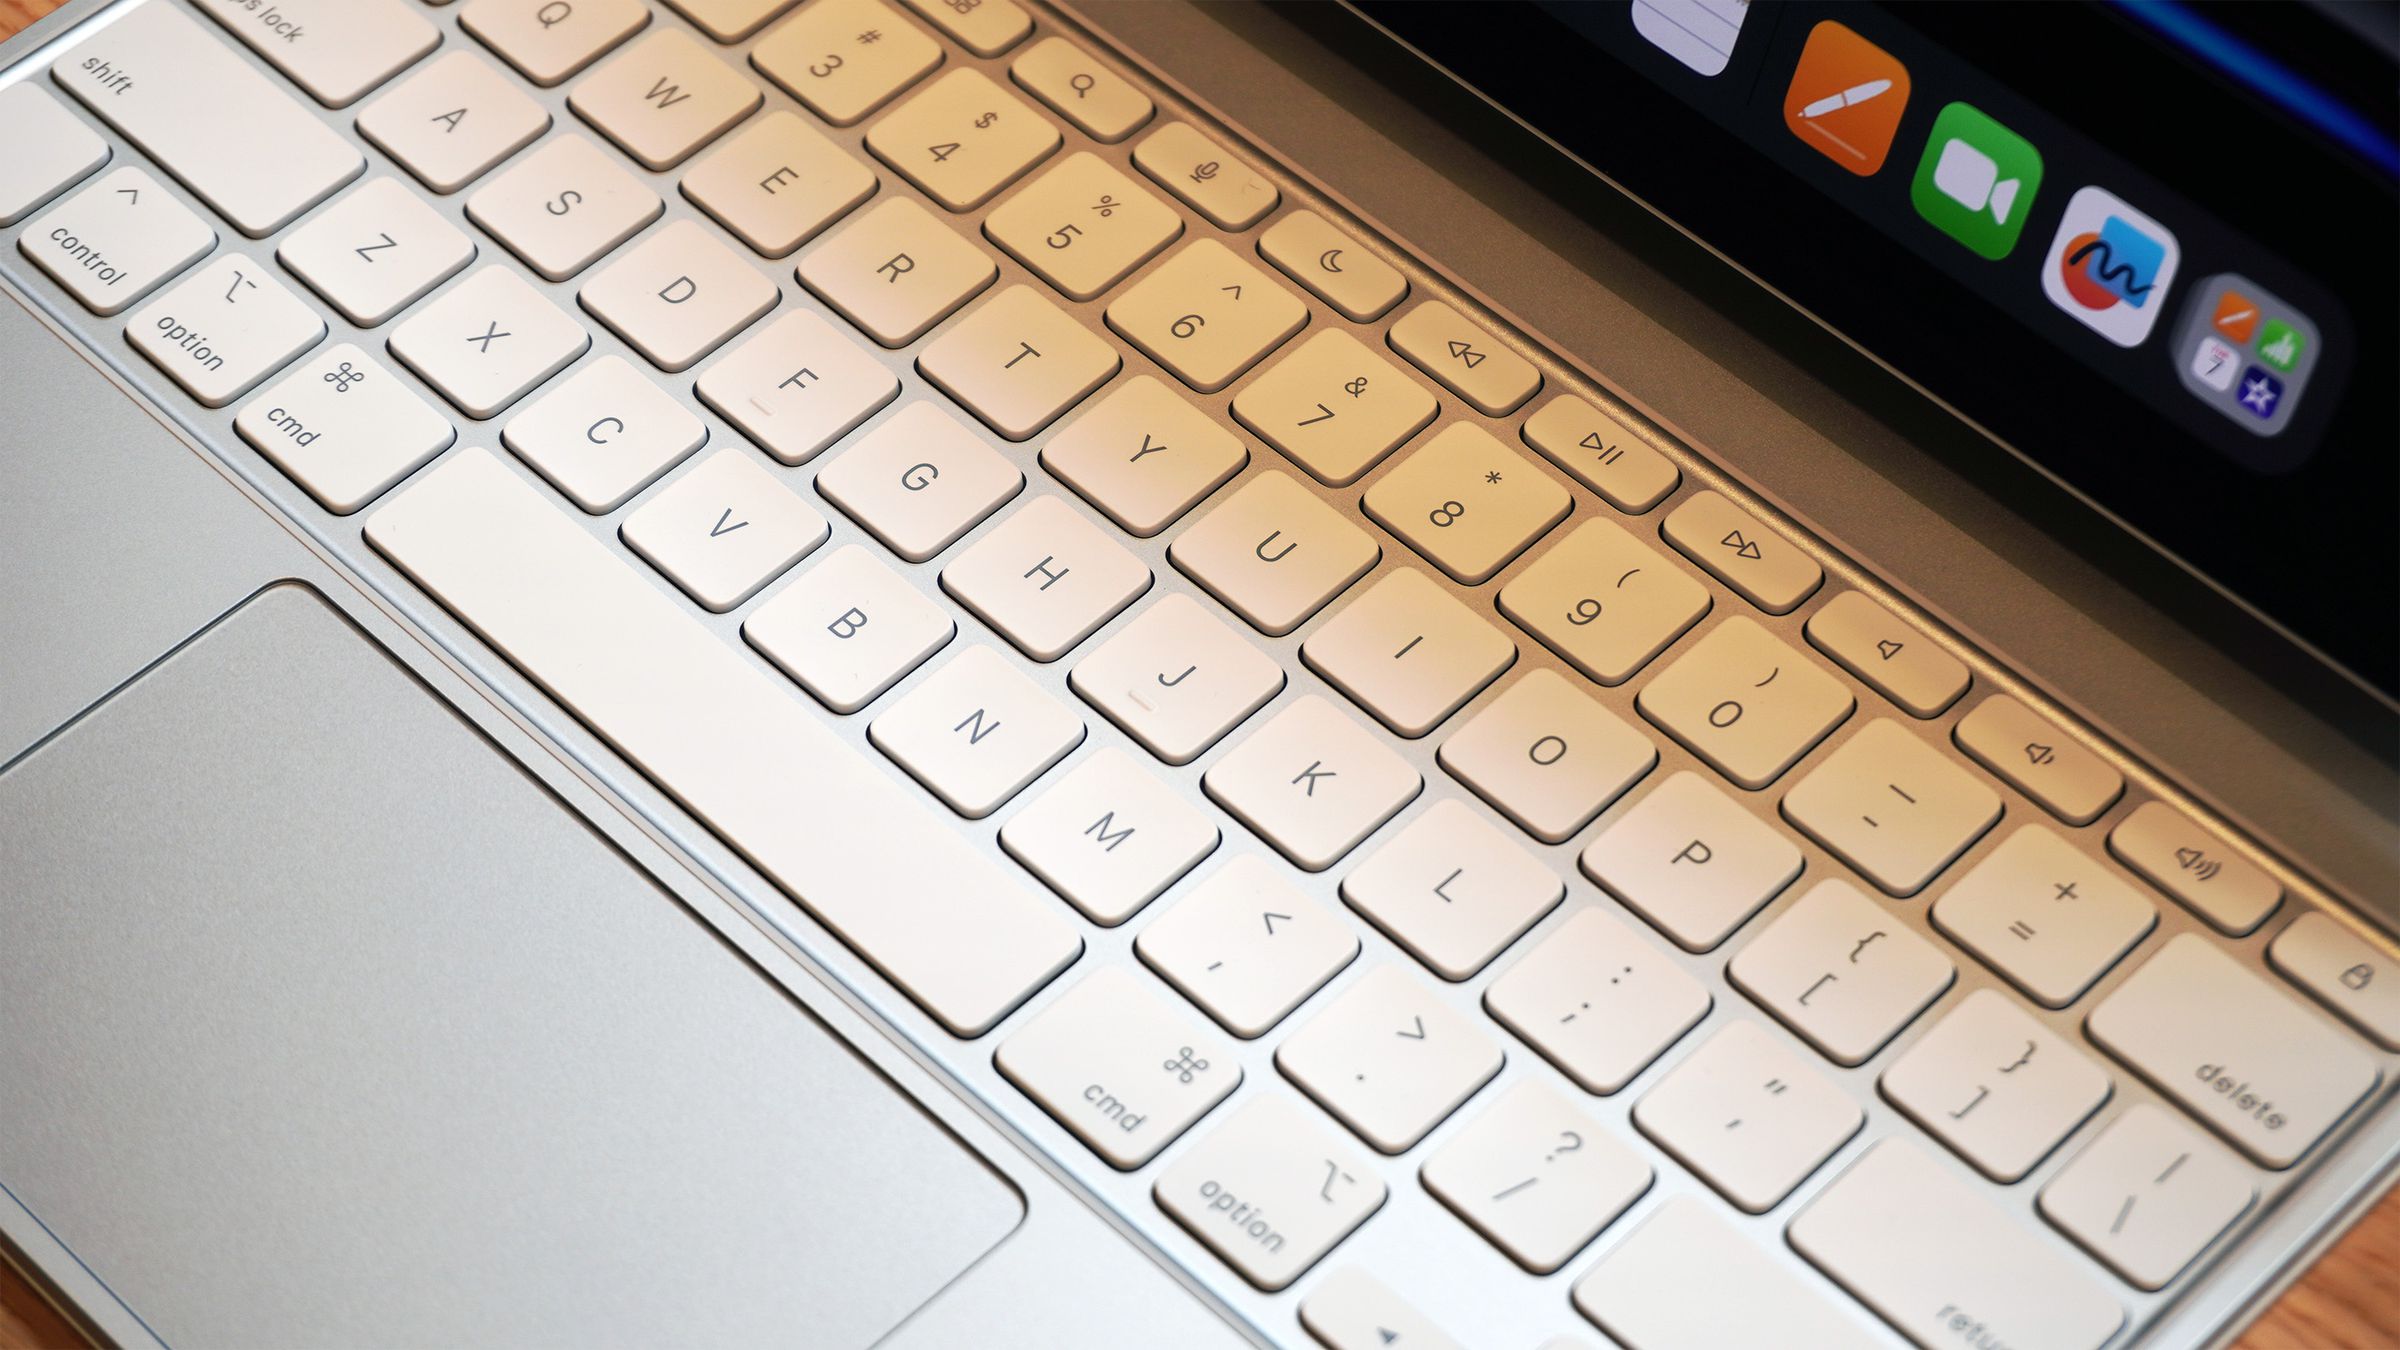 Збільшене зображення клавіатури зі сріблястою верхньою панеллю, білими клавішами та великим трекпадом. Він має функціональний ряд і підключається до iPad Pro.